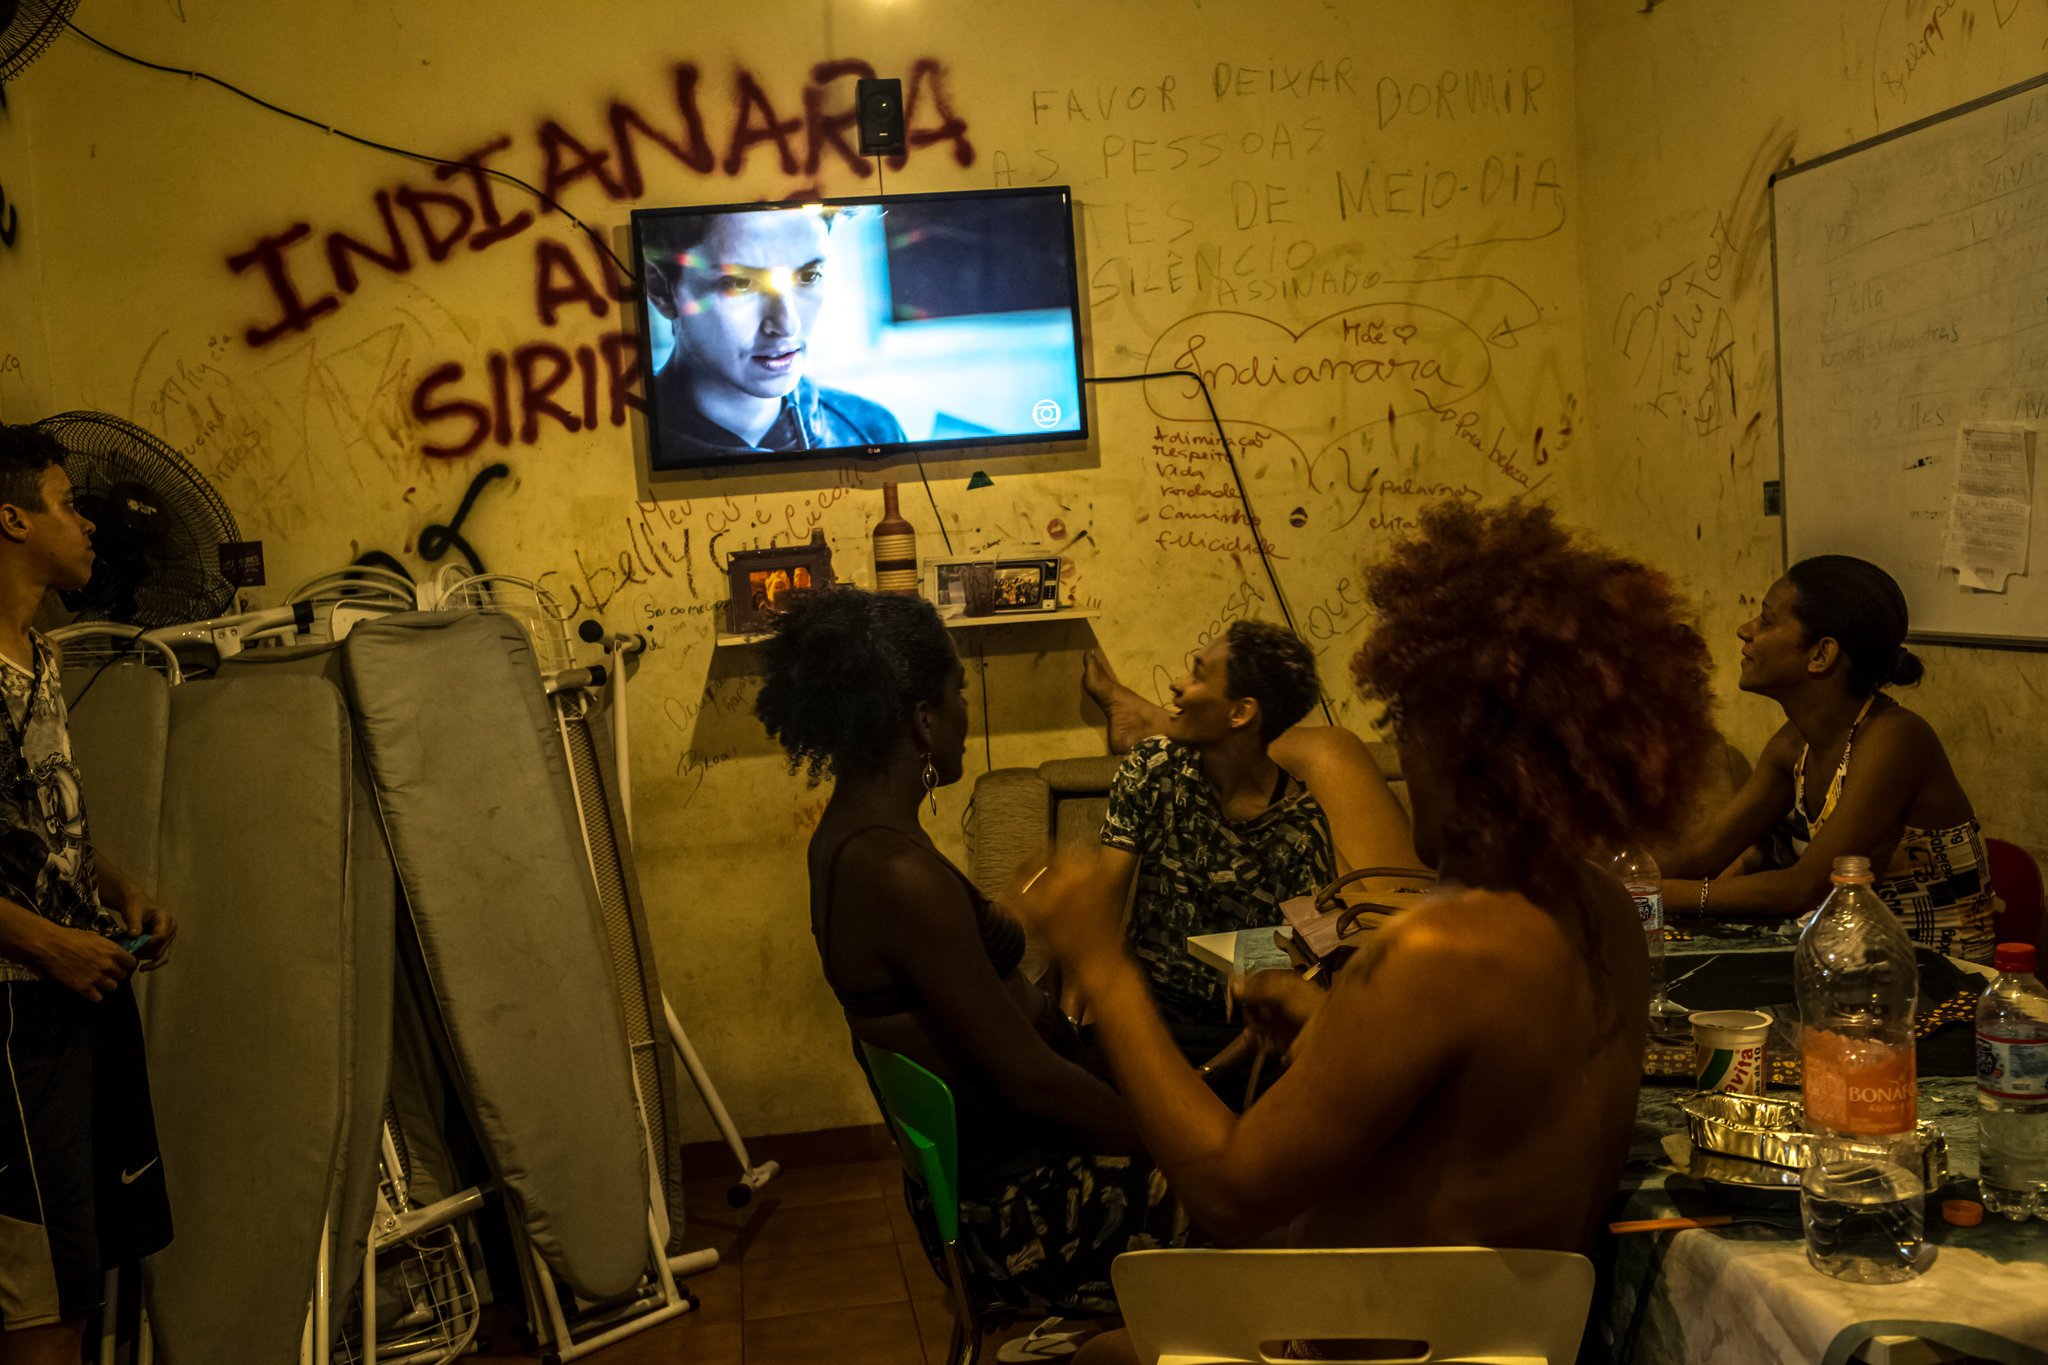 transgender in brazil watching trans soap opera